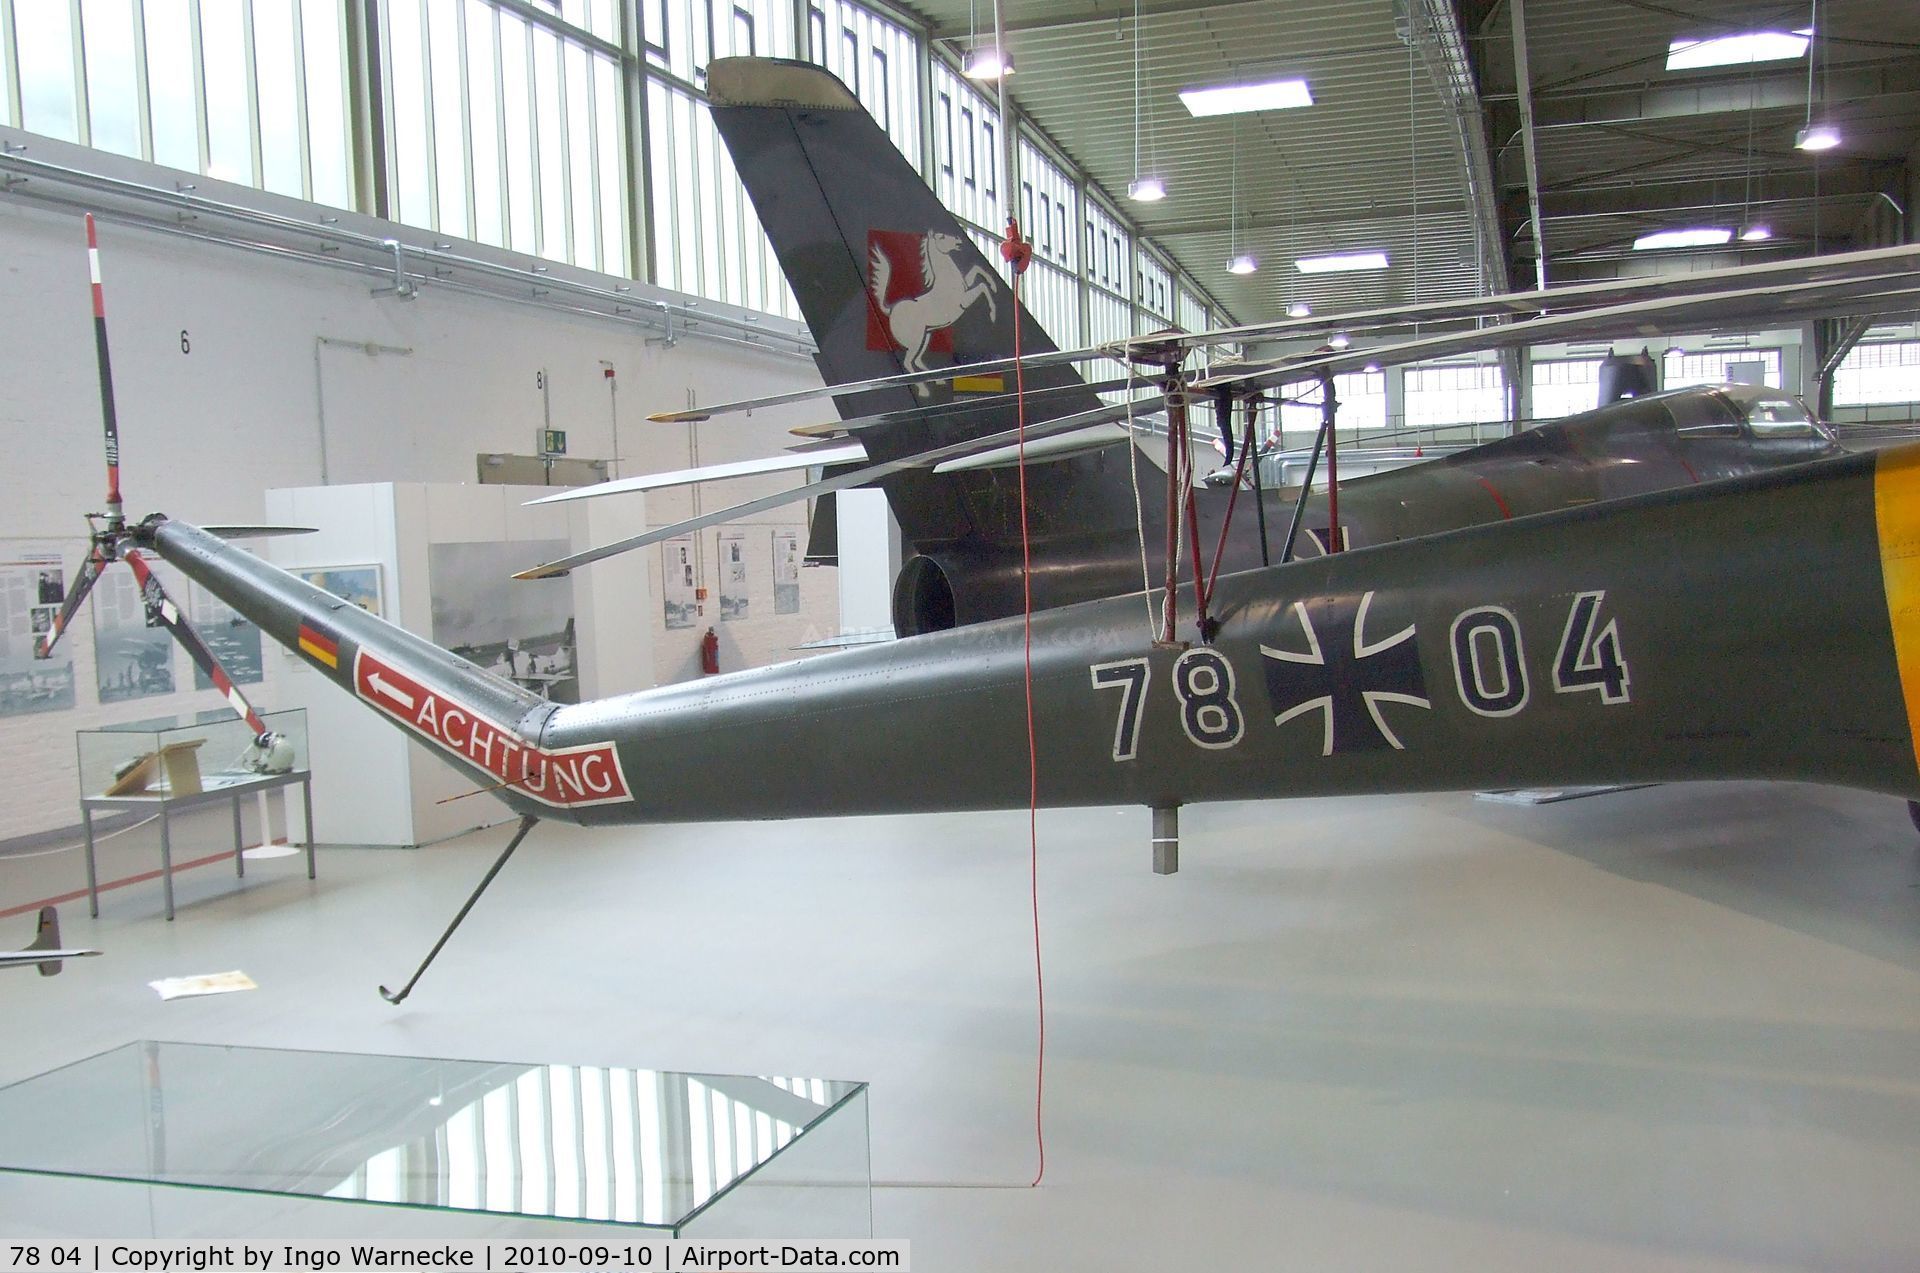 78 04, Bristol 171 Sycamore Mk.52 C/N 13442, Bristol 171 Sycamore Mk52 at the Luftwaffenmuseum, Berlin-Gatow